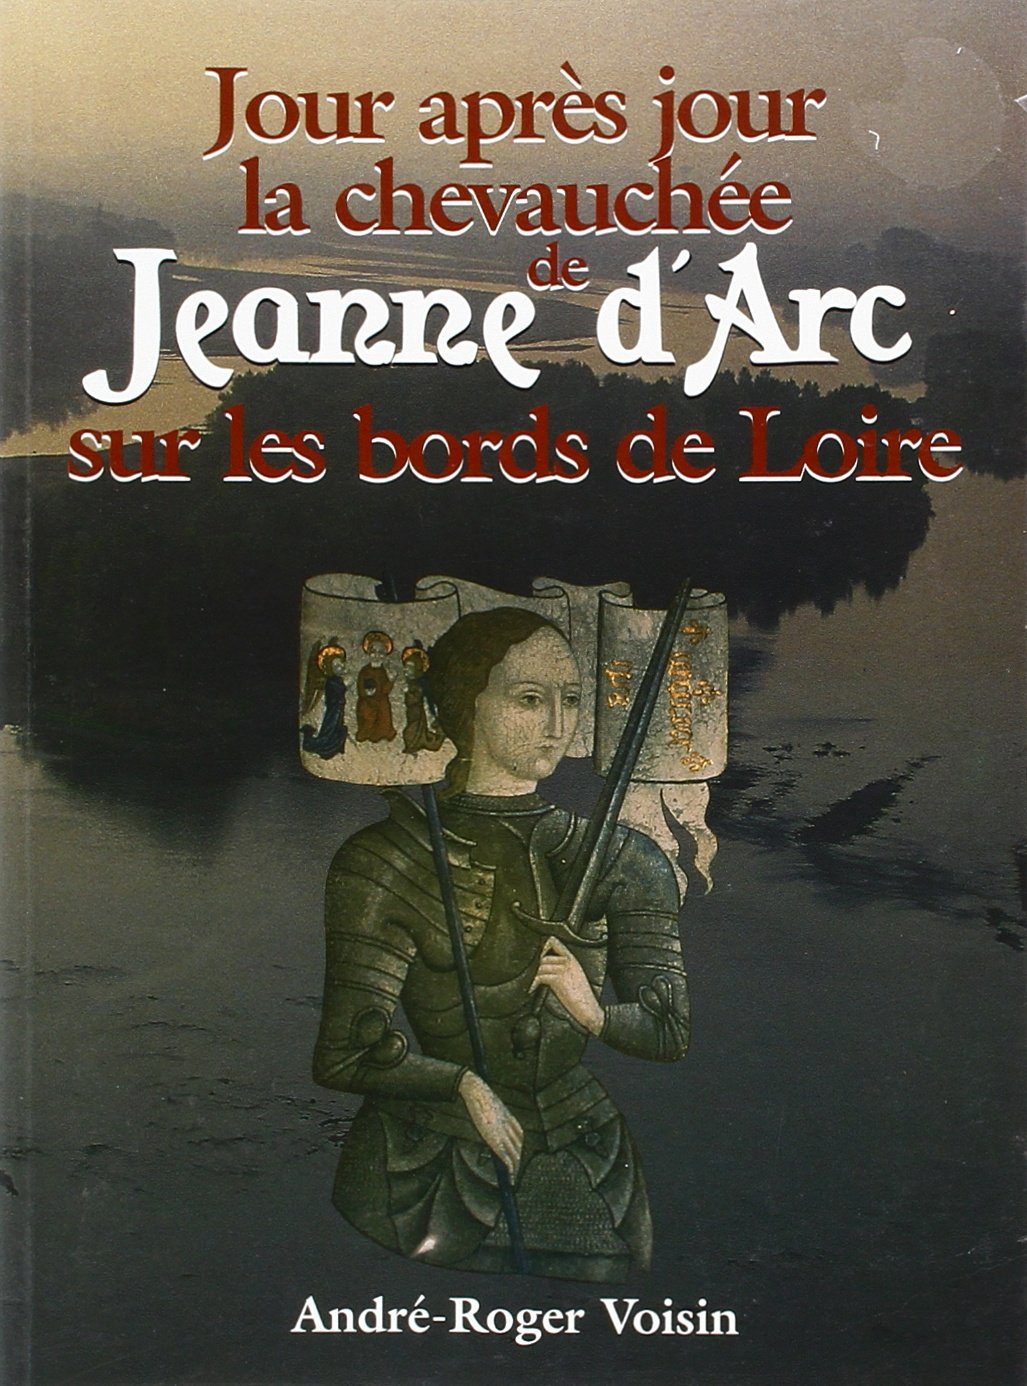 Jour après jour la chevauchée de Jeanne d'Arc sur les bords de Loire